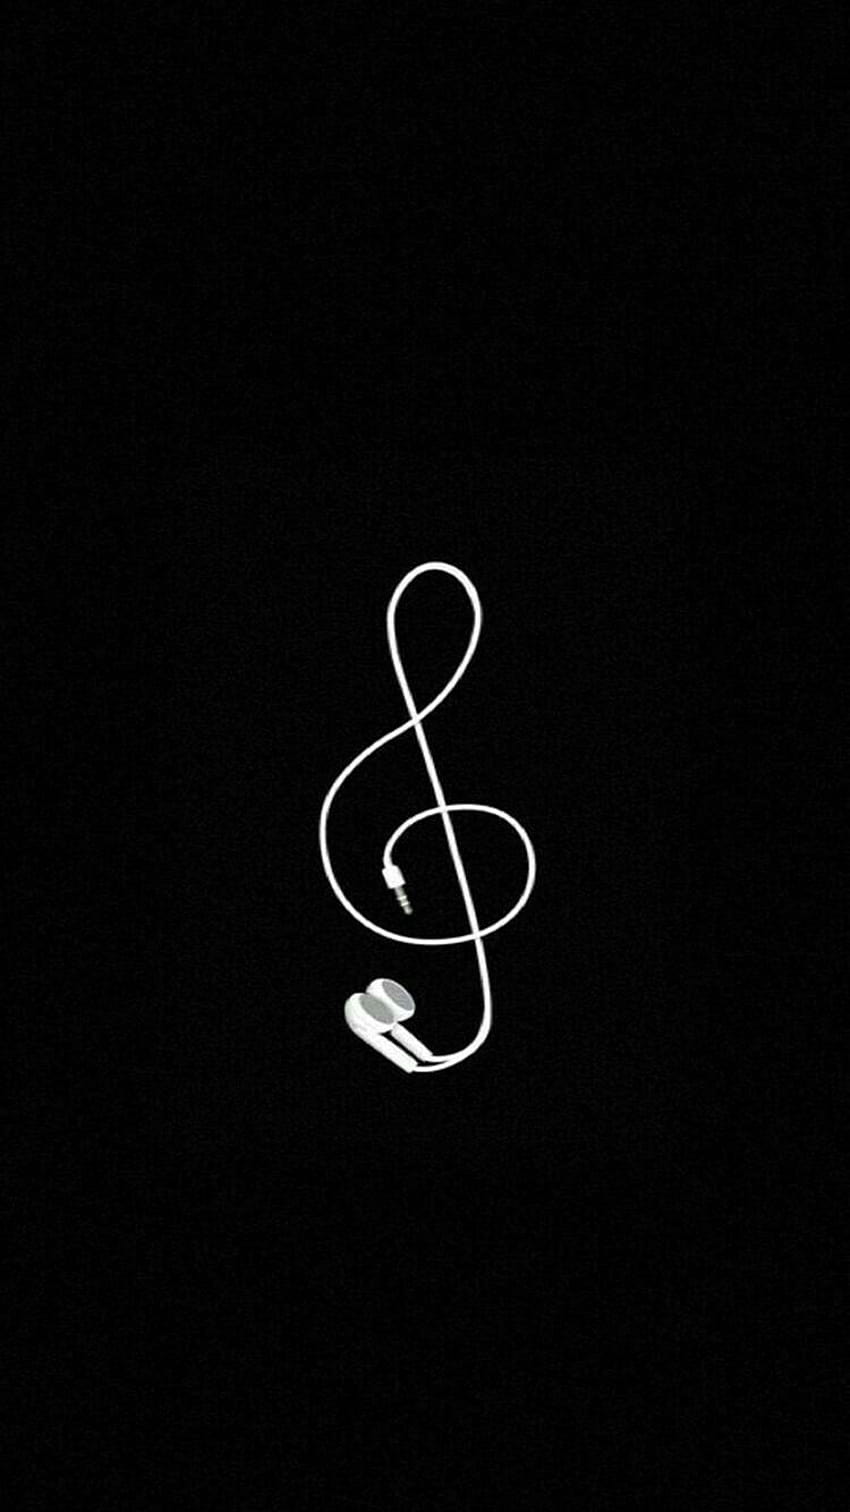 Simple Music treble clef auriculares en blanco y negro iPhone, Android, g clif fondo de pantalla del teléfono